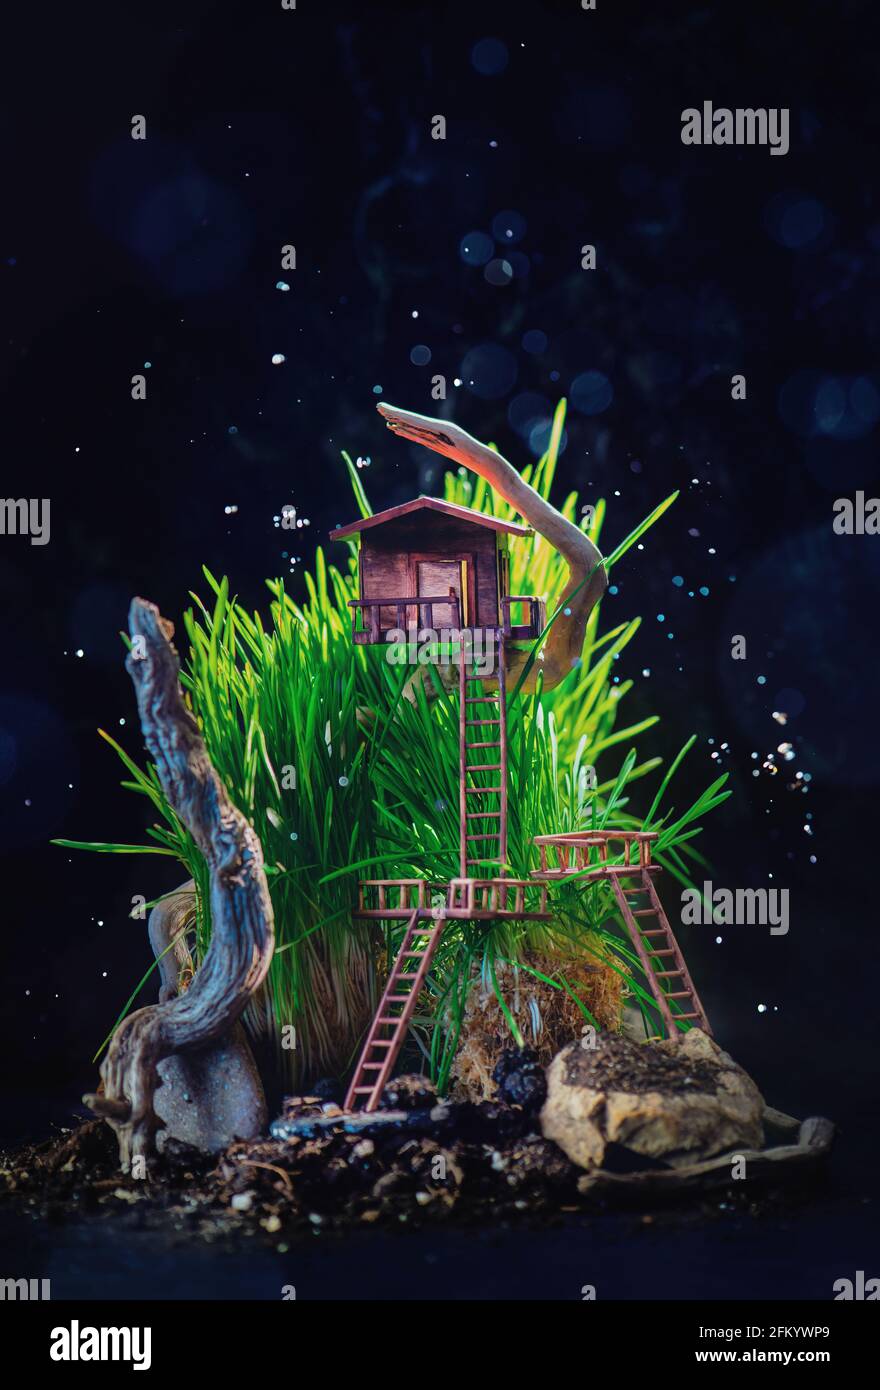 Casa sull'albero in miniatura in erba alta con driftwood, avventure nella foresta, copertina libro per bambini Foto Stock